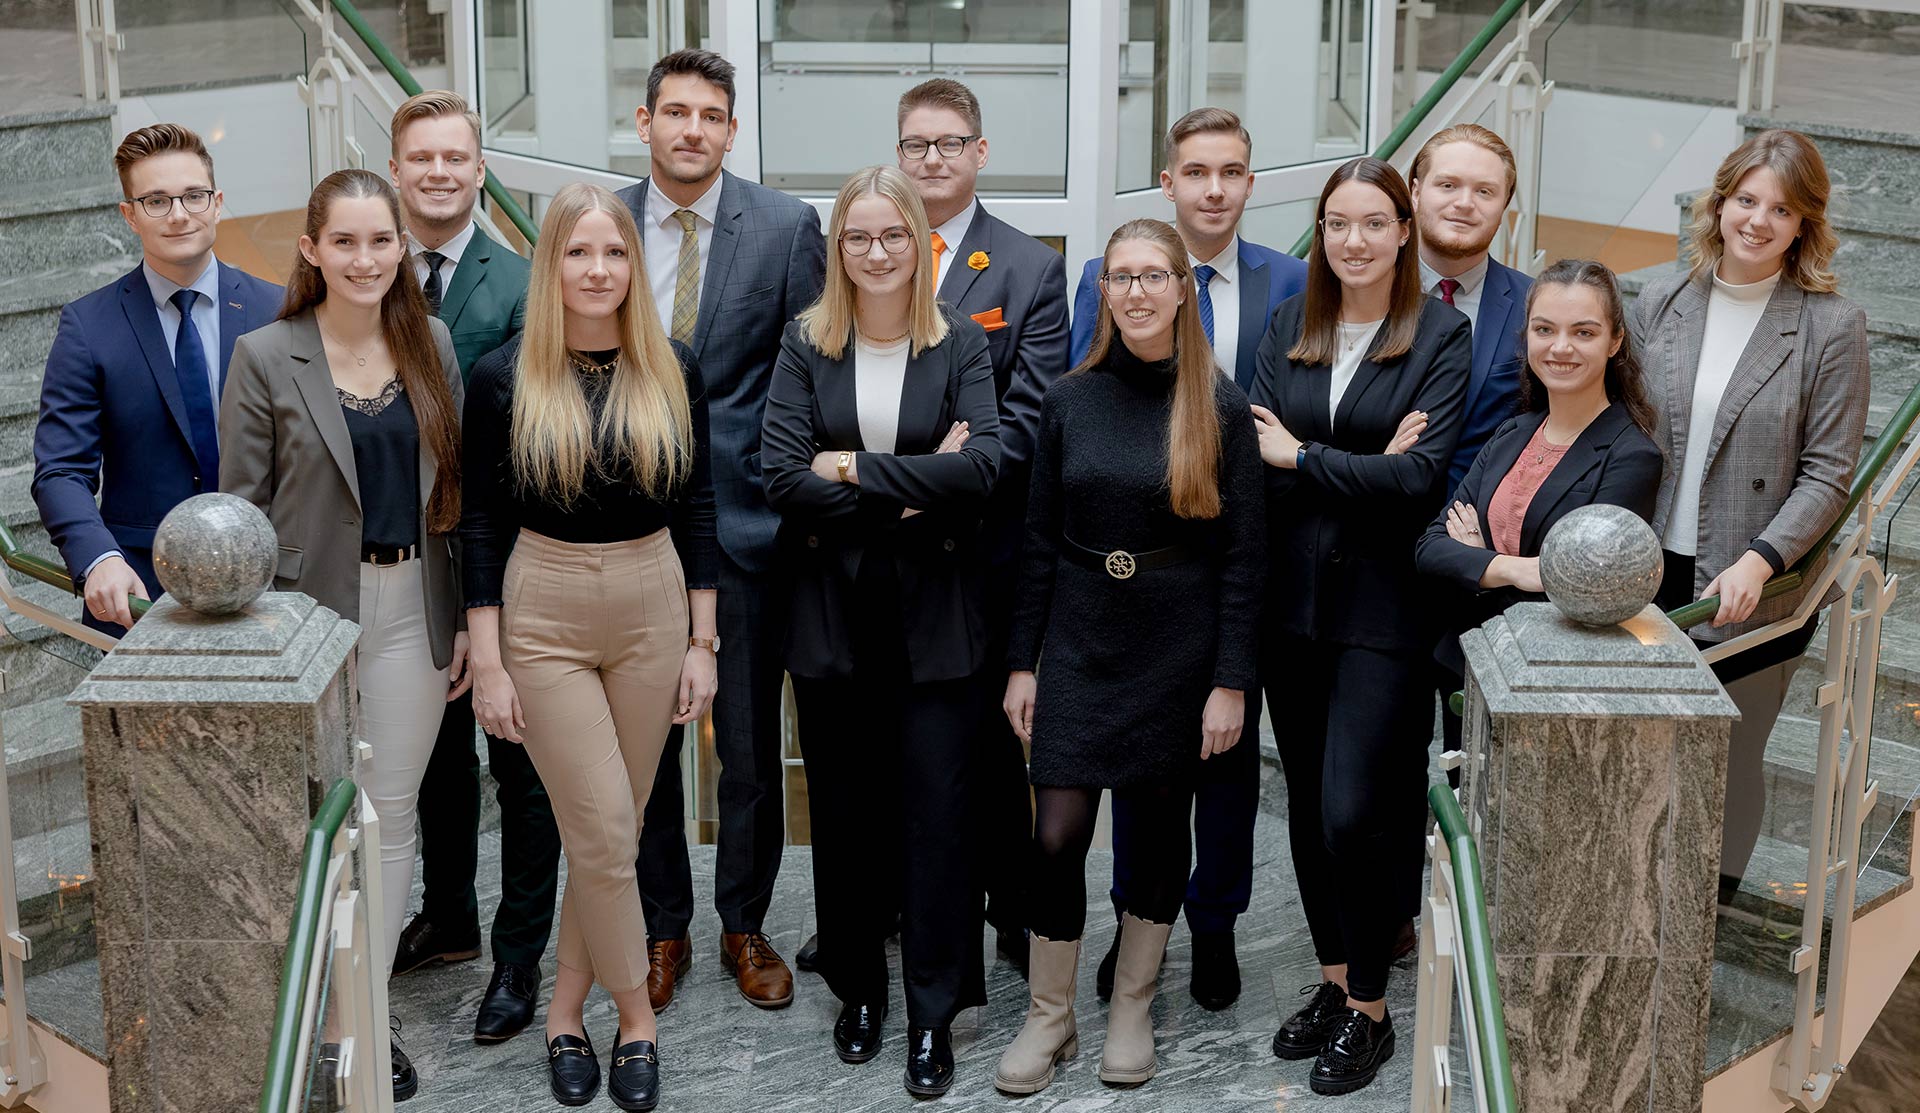 Motivierter Zuwachs für die Volksbank Oberberg: 13 junge Bankkaufleute freuen sich auf ihre berufliche Zukunft